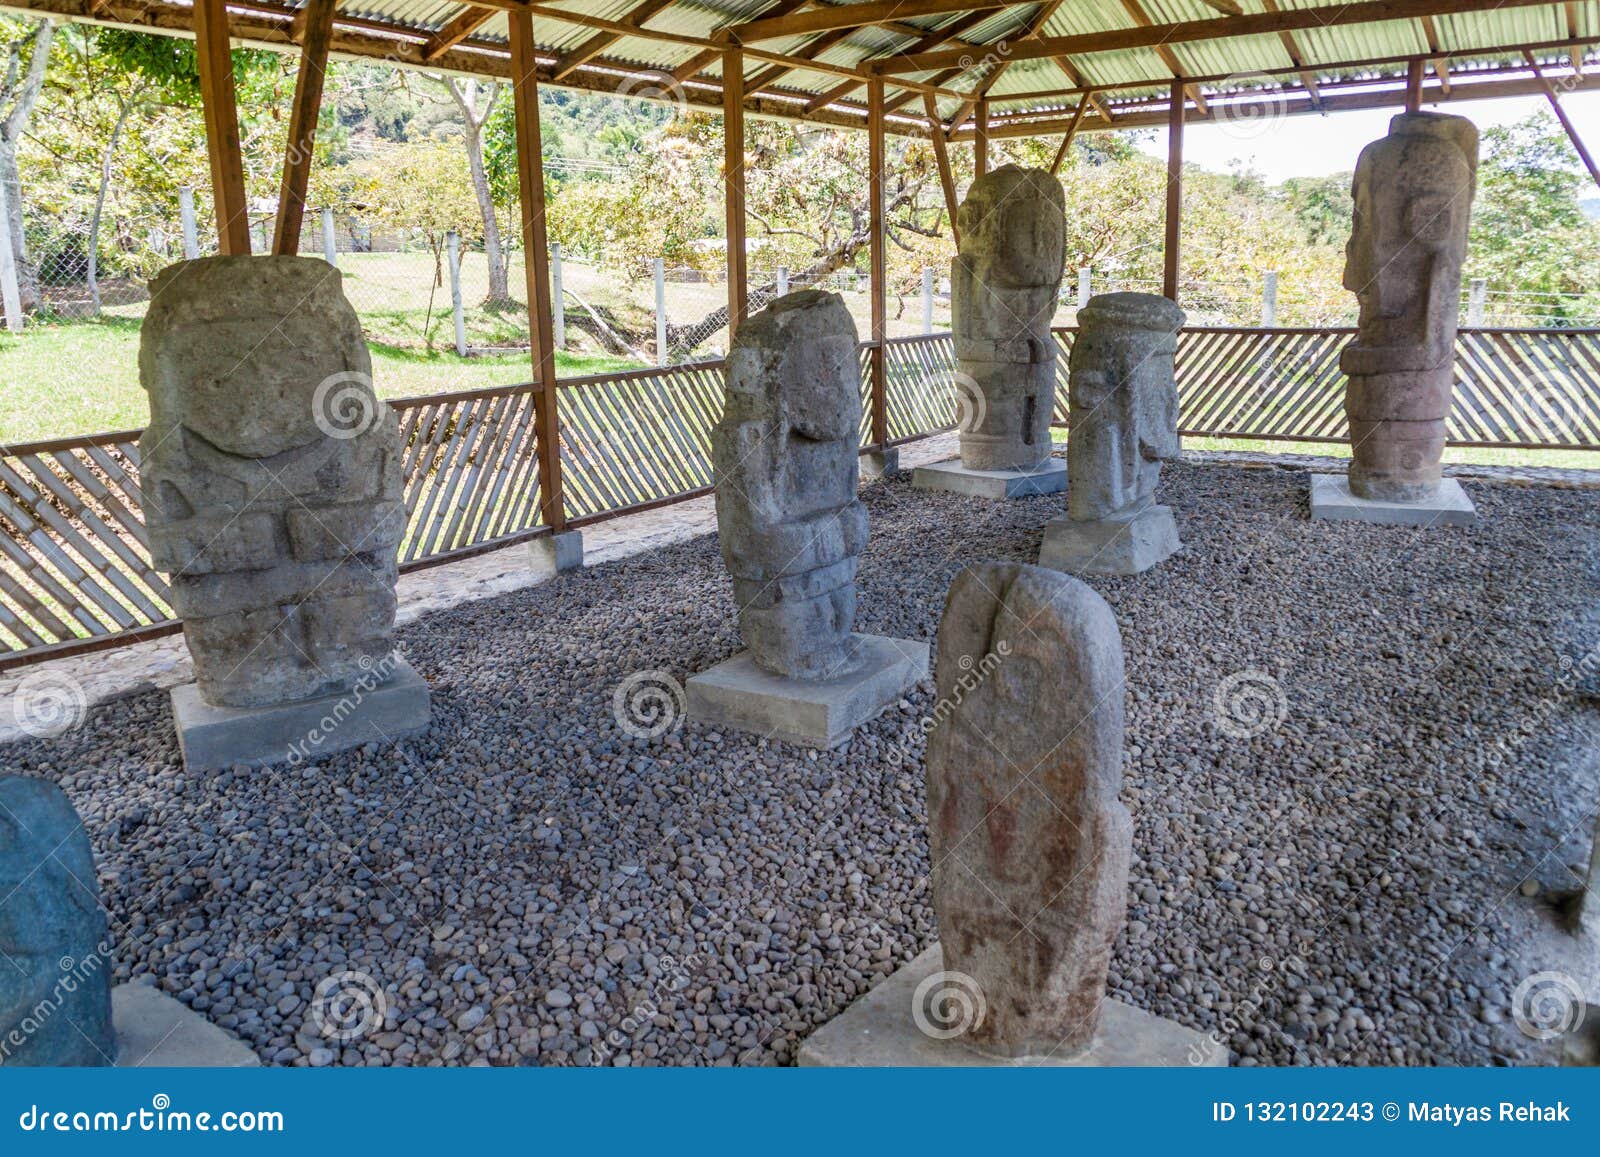 ancient statues at el tablon site in tierradentro